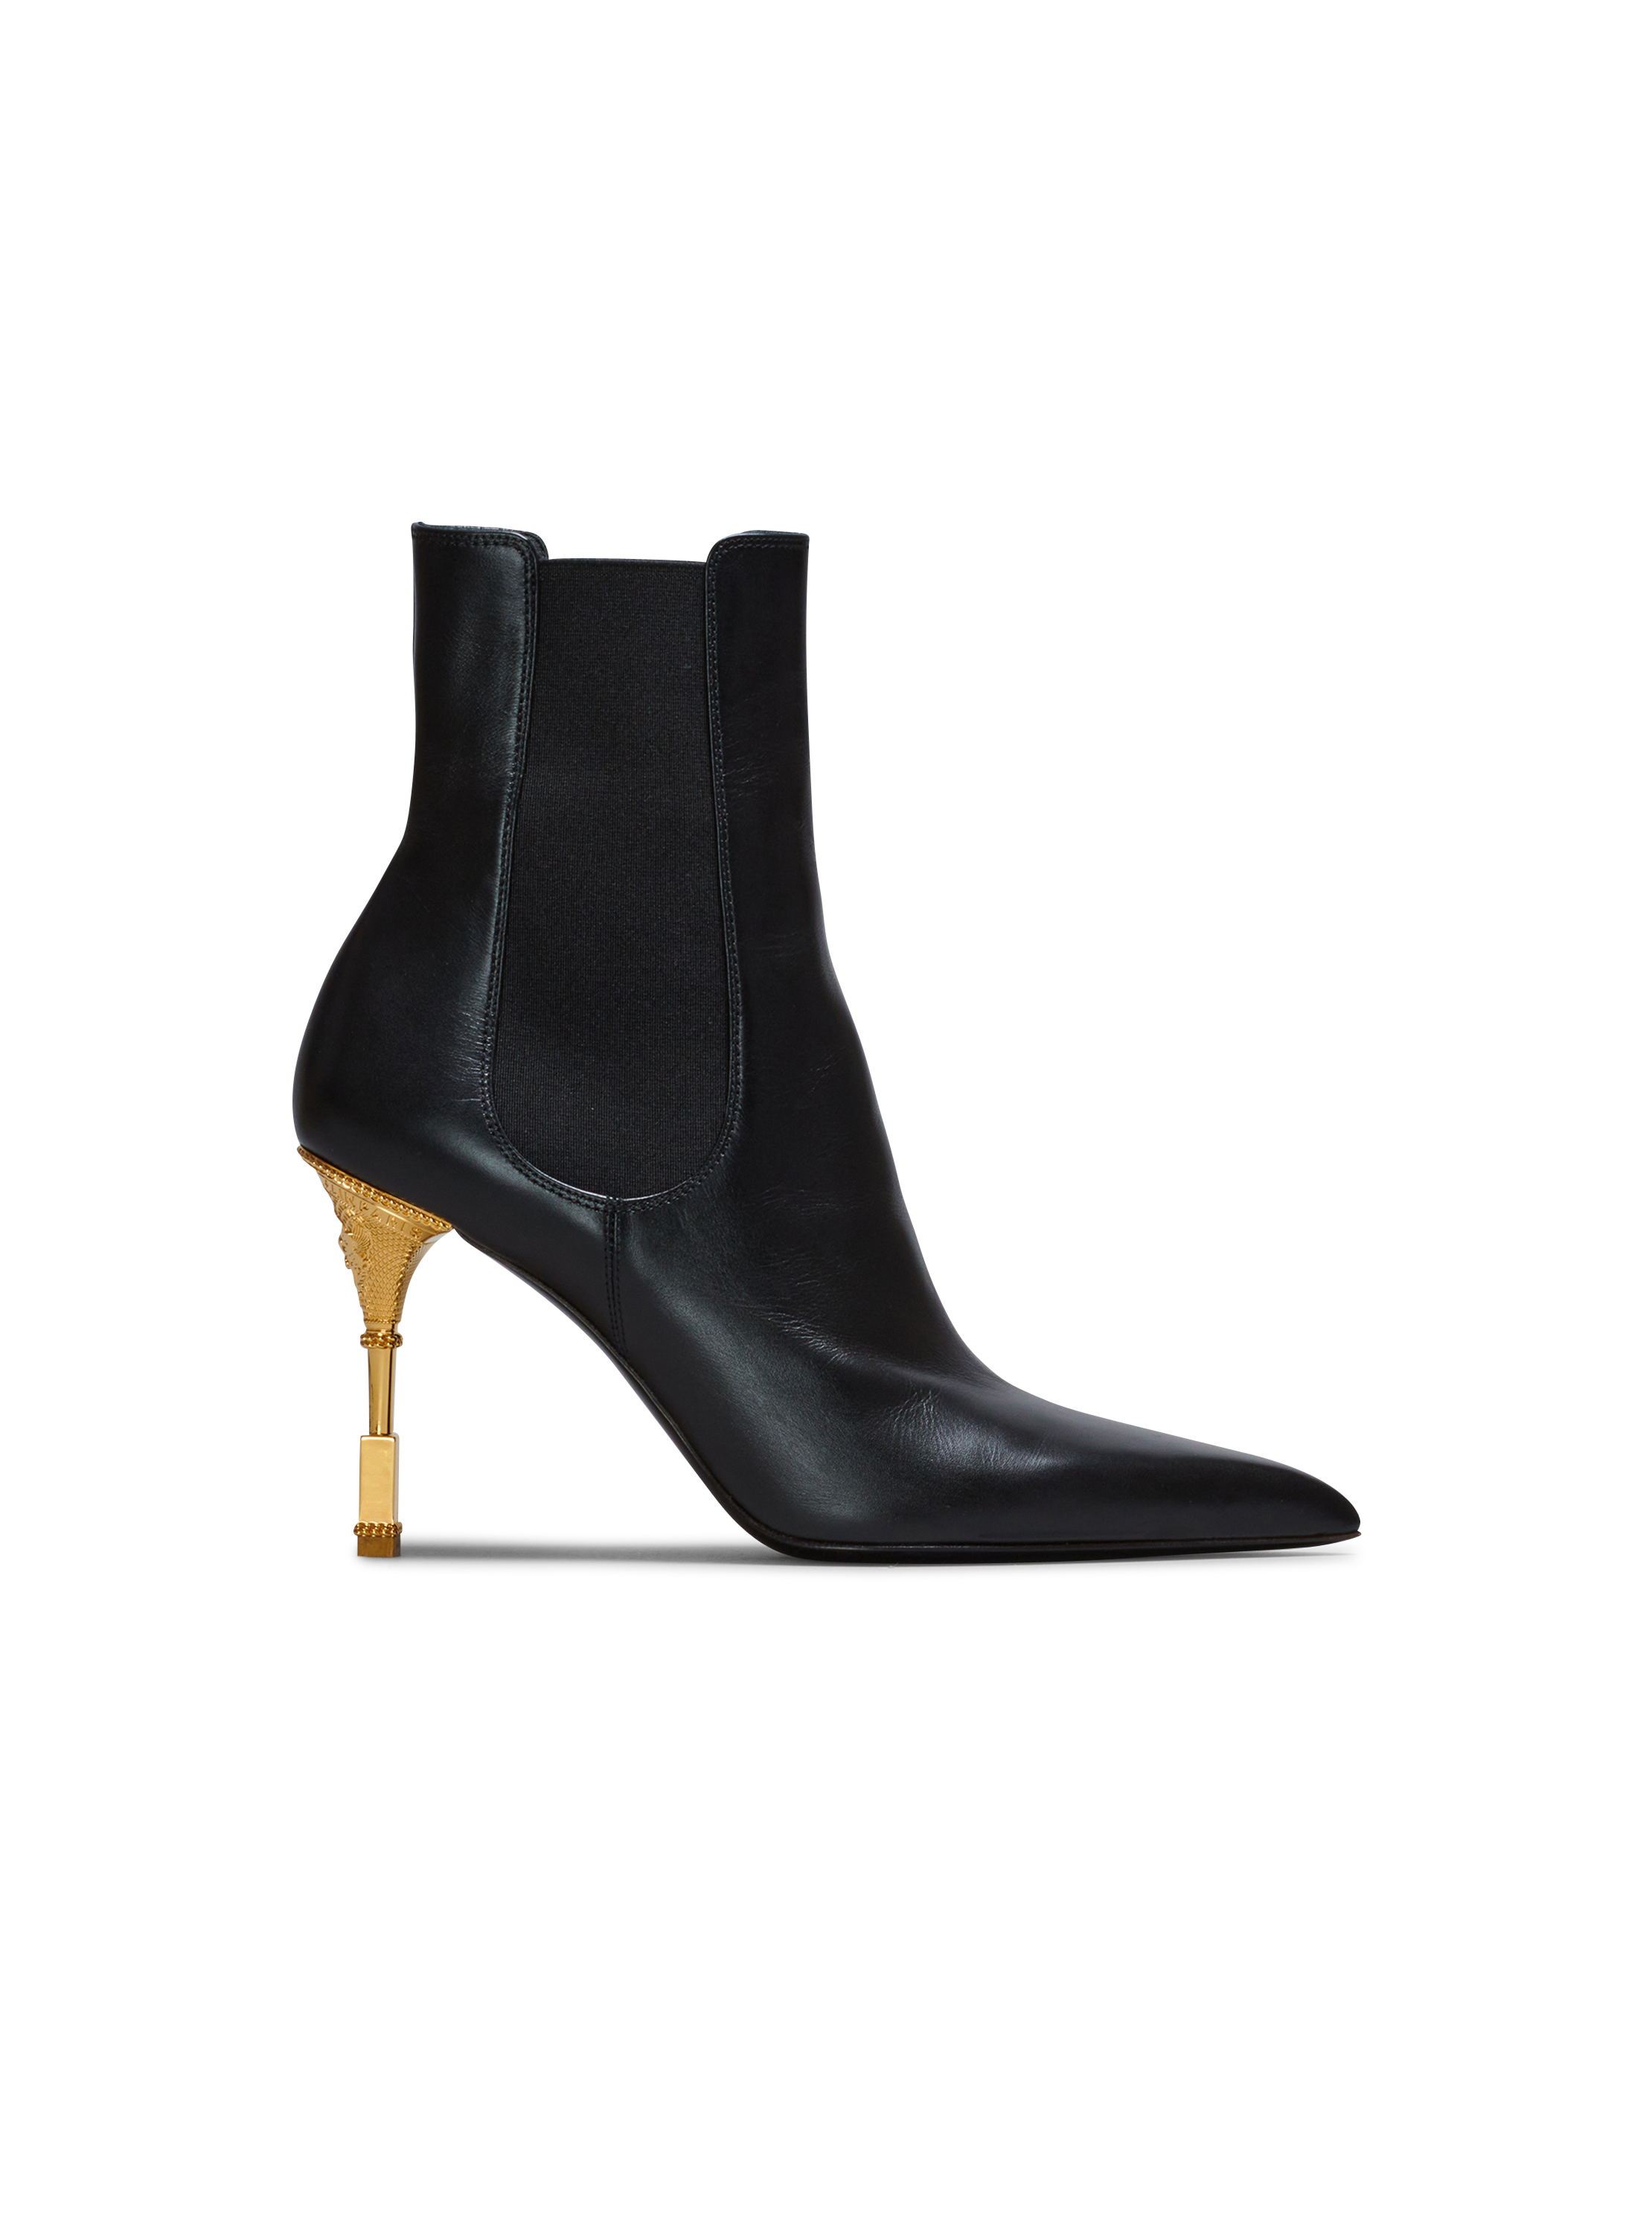 Balmain Leder Ankle Boots Moneta aus Leder in Schwarz Damen Schuhe Stiefel Stiefel mit Hohen Absätzen 